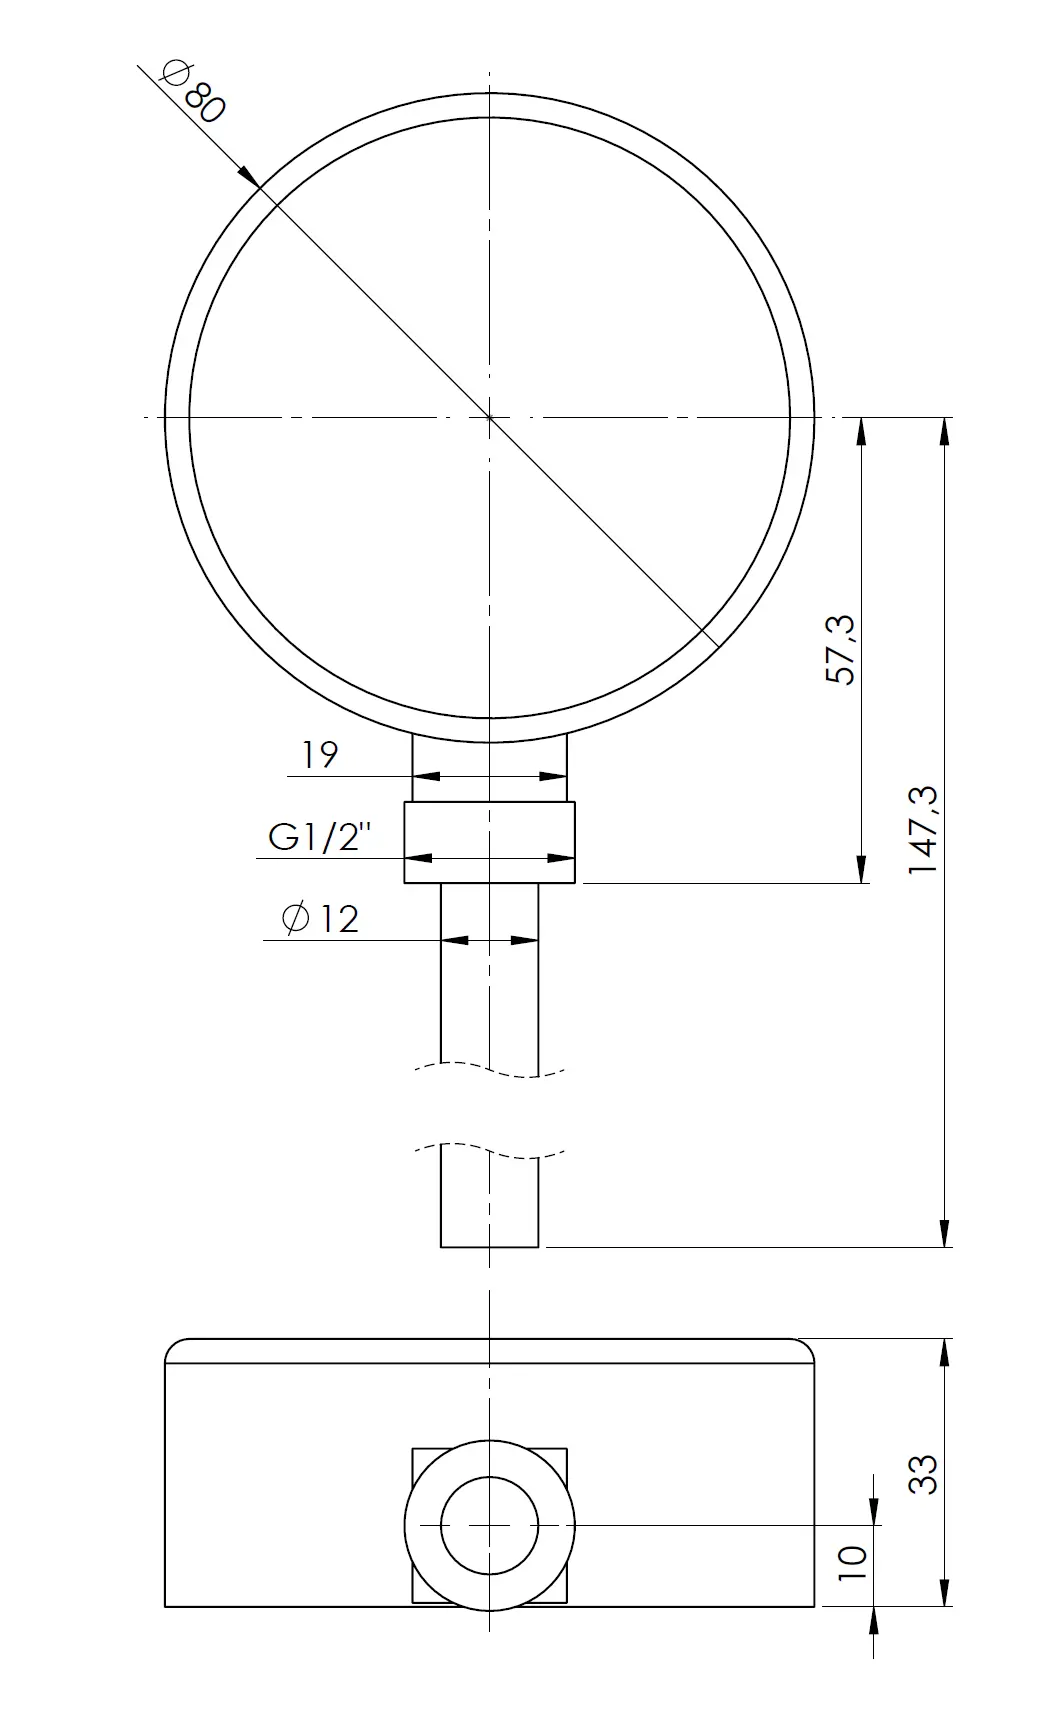 Termometr bimetaliczny BiTh 80, fi80 mm, -20÷60°C, L 100 mm, G1/2", rad, kl. 2 - budowa